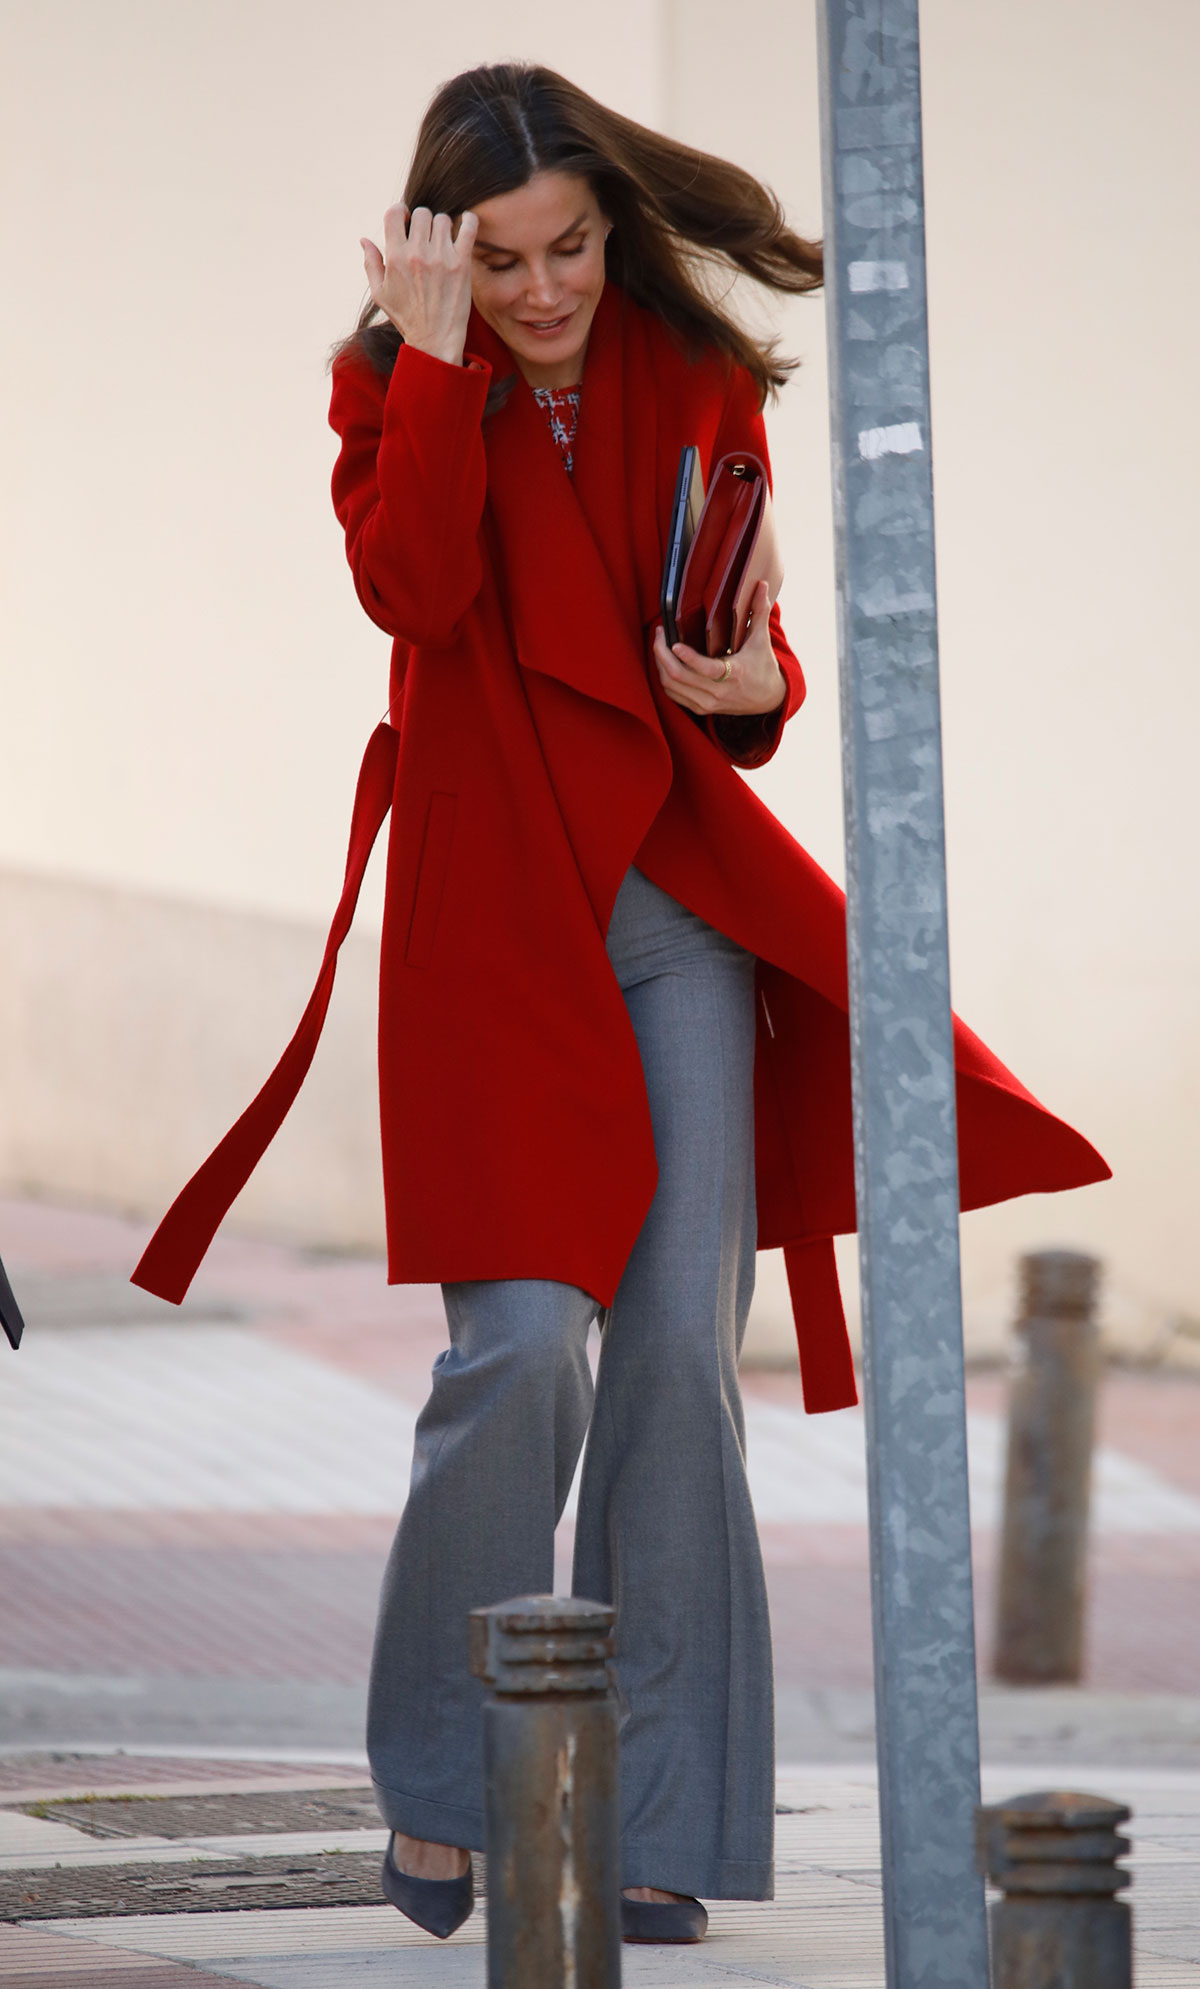 Letizia impresiona de rojo con un look ejecutivo perfecto (con iPad en mano)